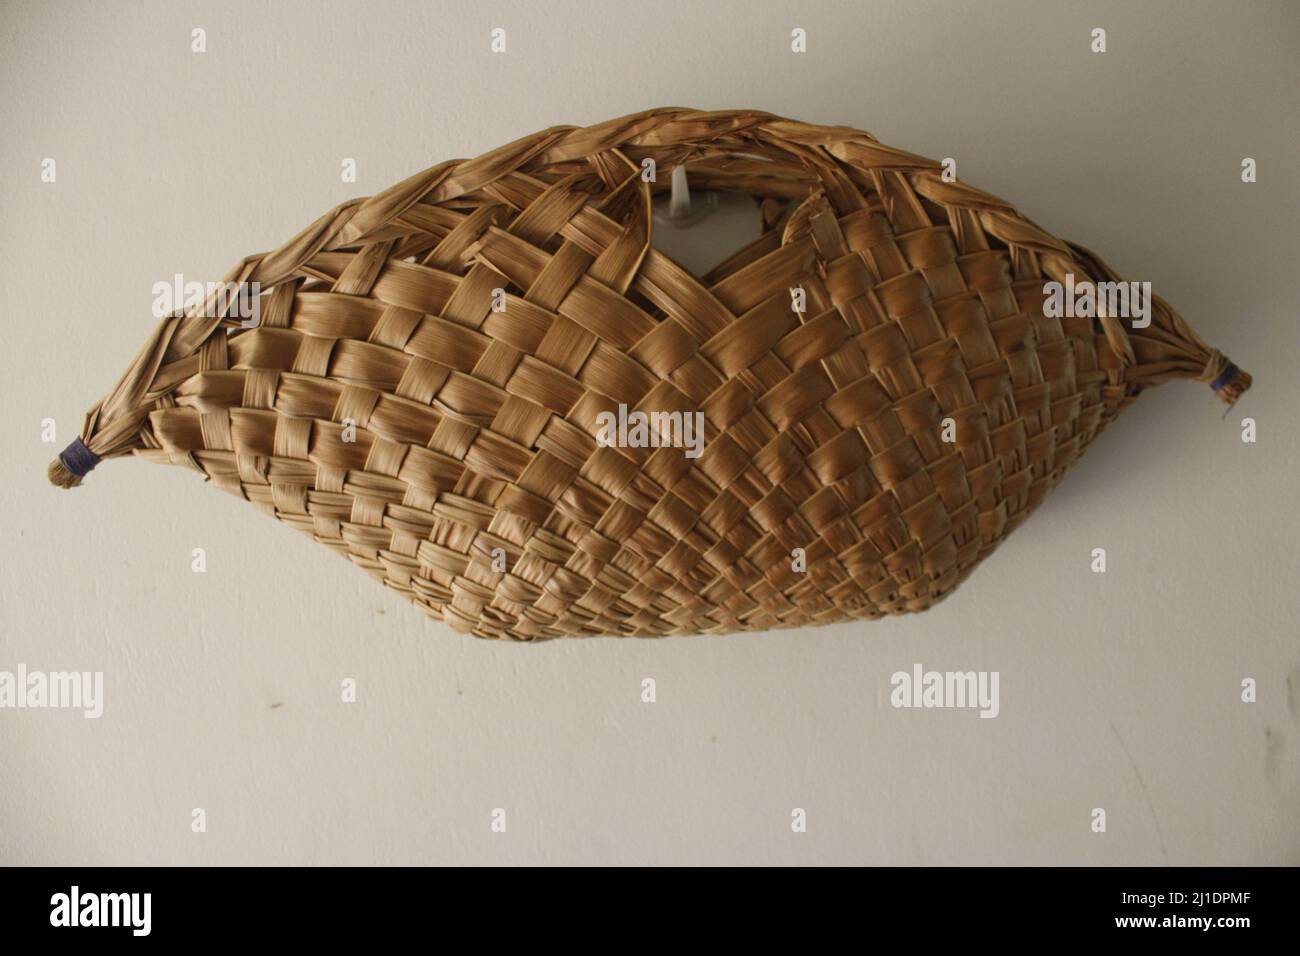 Der Tolai Korb - ein traditioneller, handgewebter Korb aus dem Osten von New Britain (ENB), der aus Kokosnussbaumblättern hergestellt wird. Stockfoto